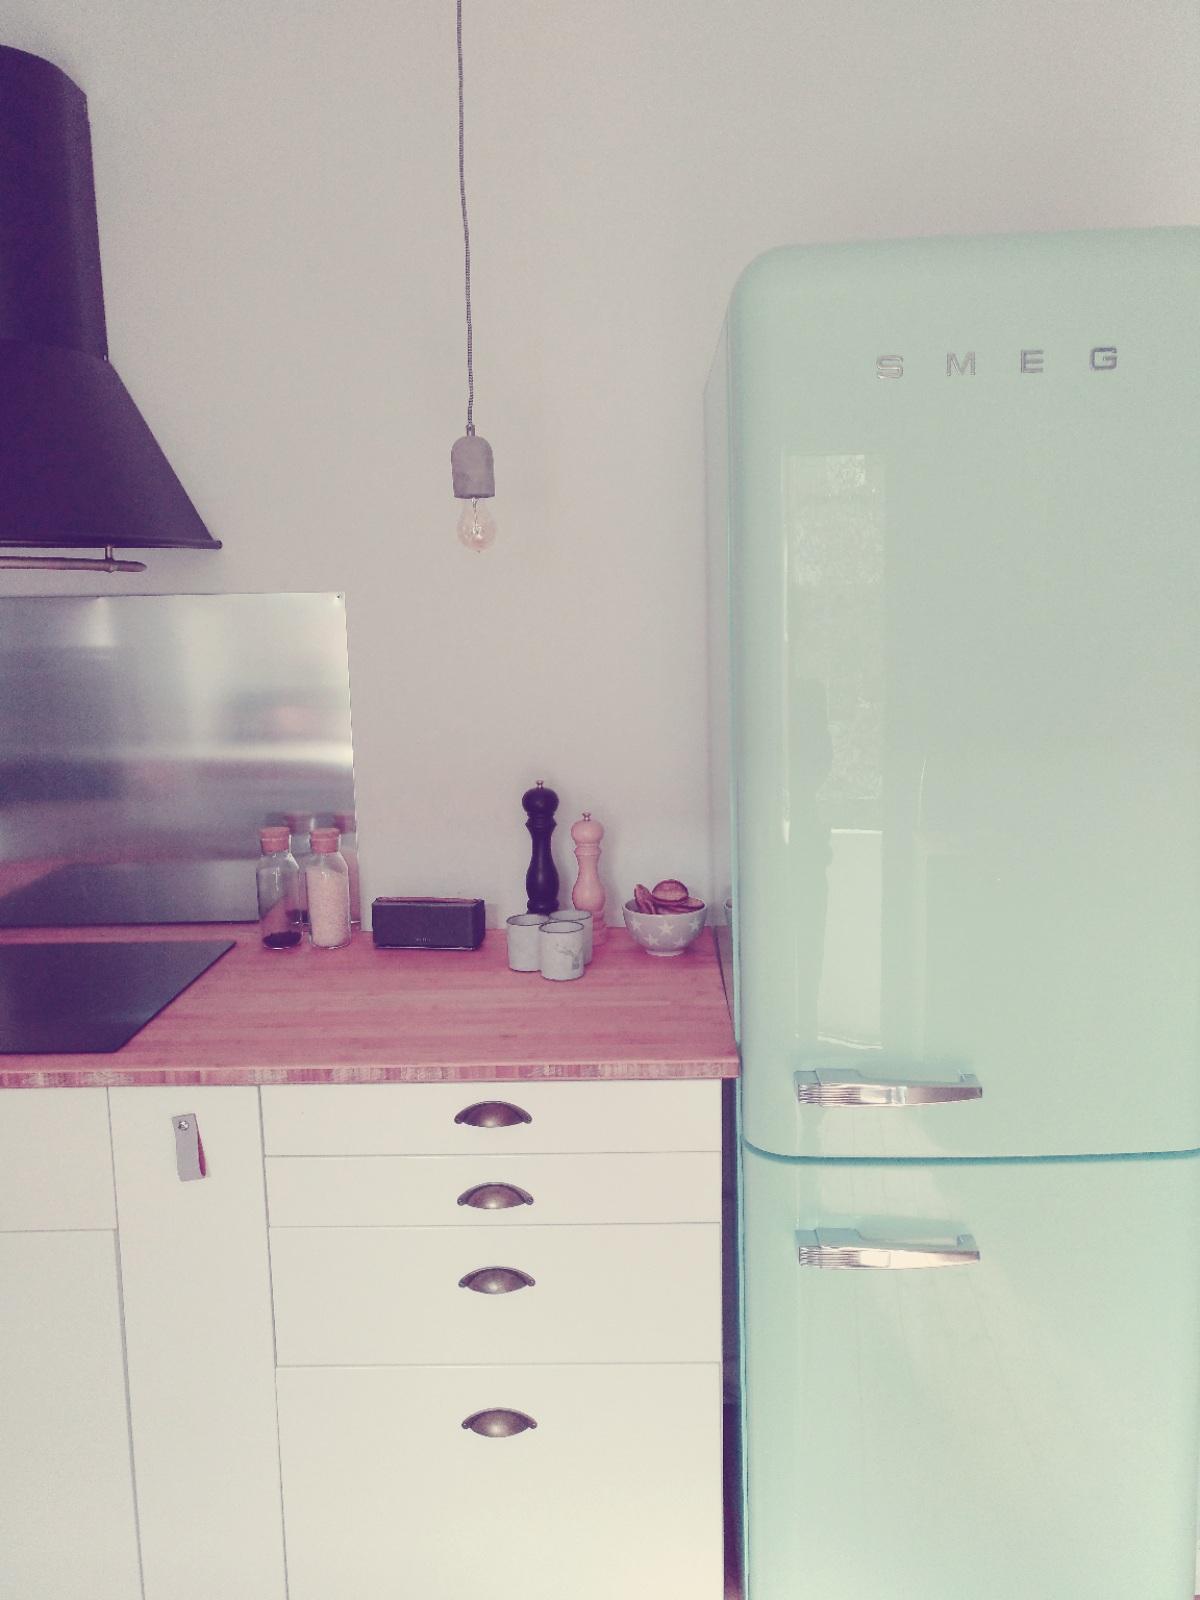 Verliebt in unsere neue Küche

#smeg #retro #edison #betonlampe #mint #bambus #kitchen